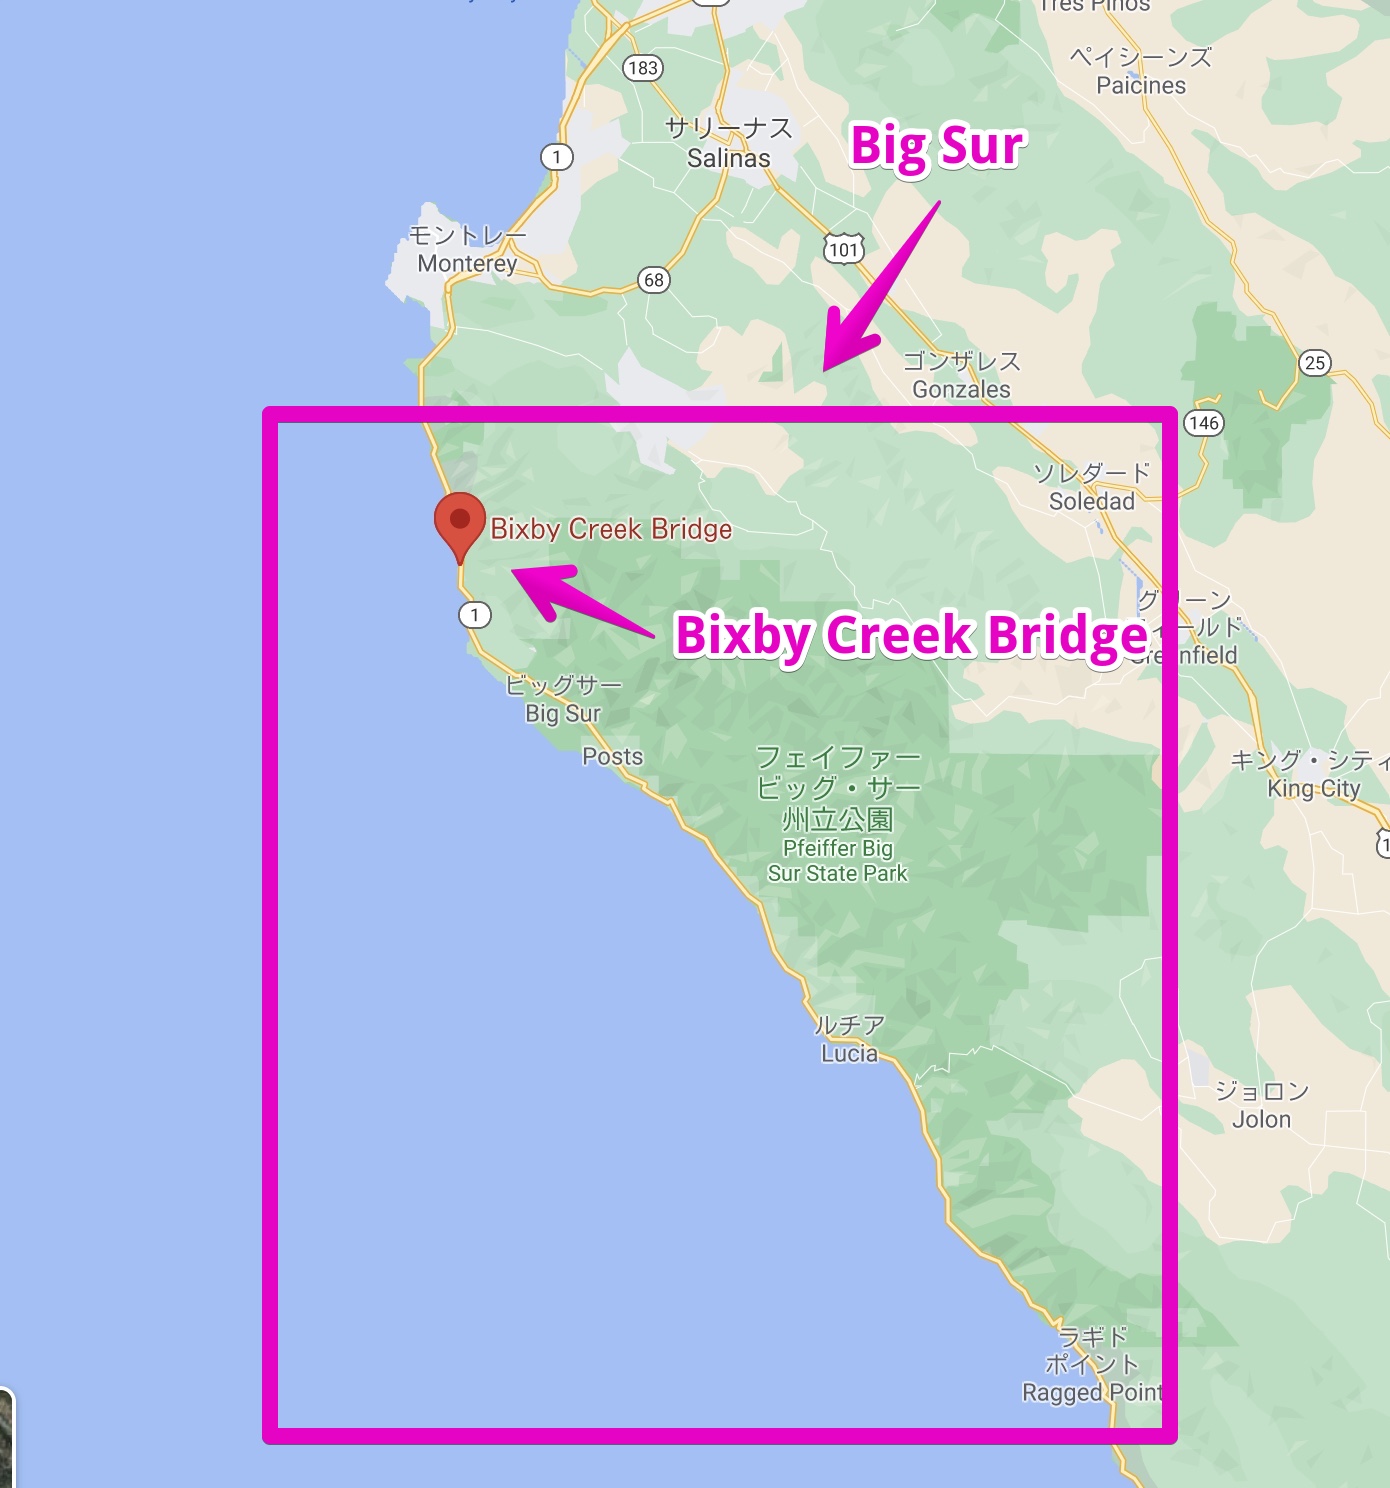 Big Surの位置を示す地図